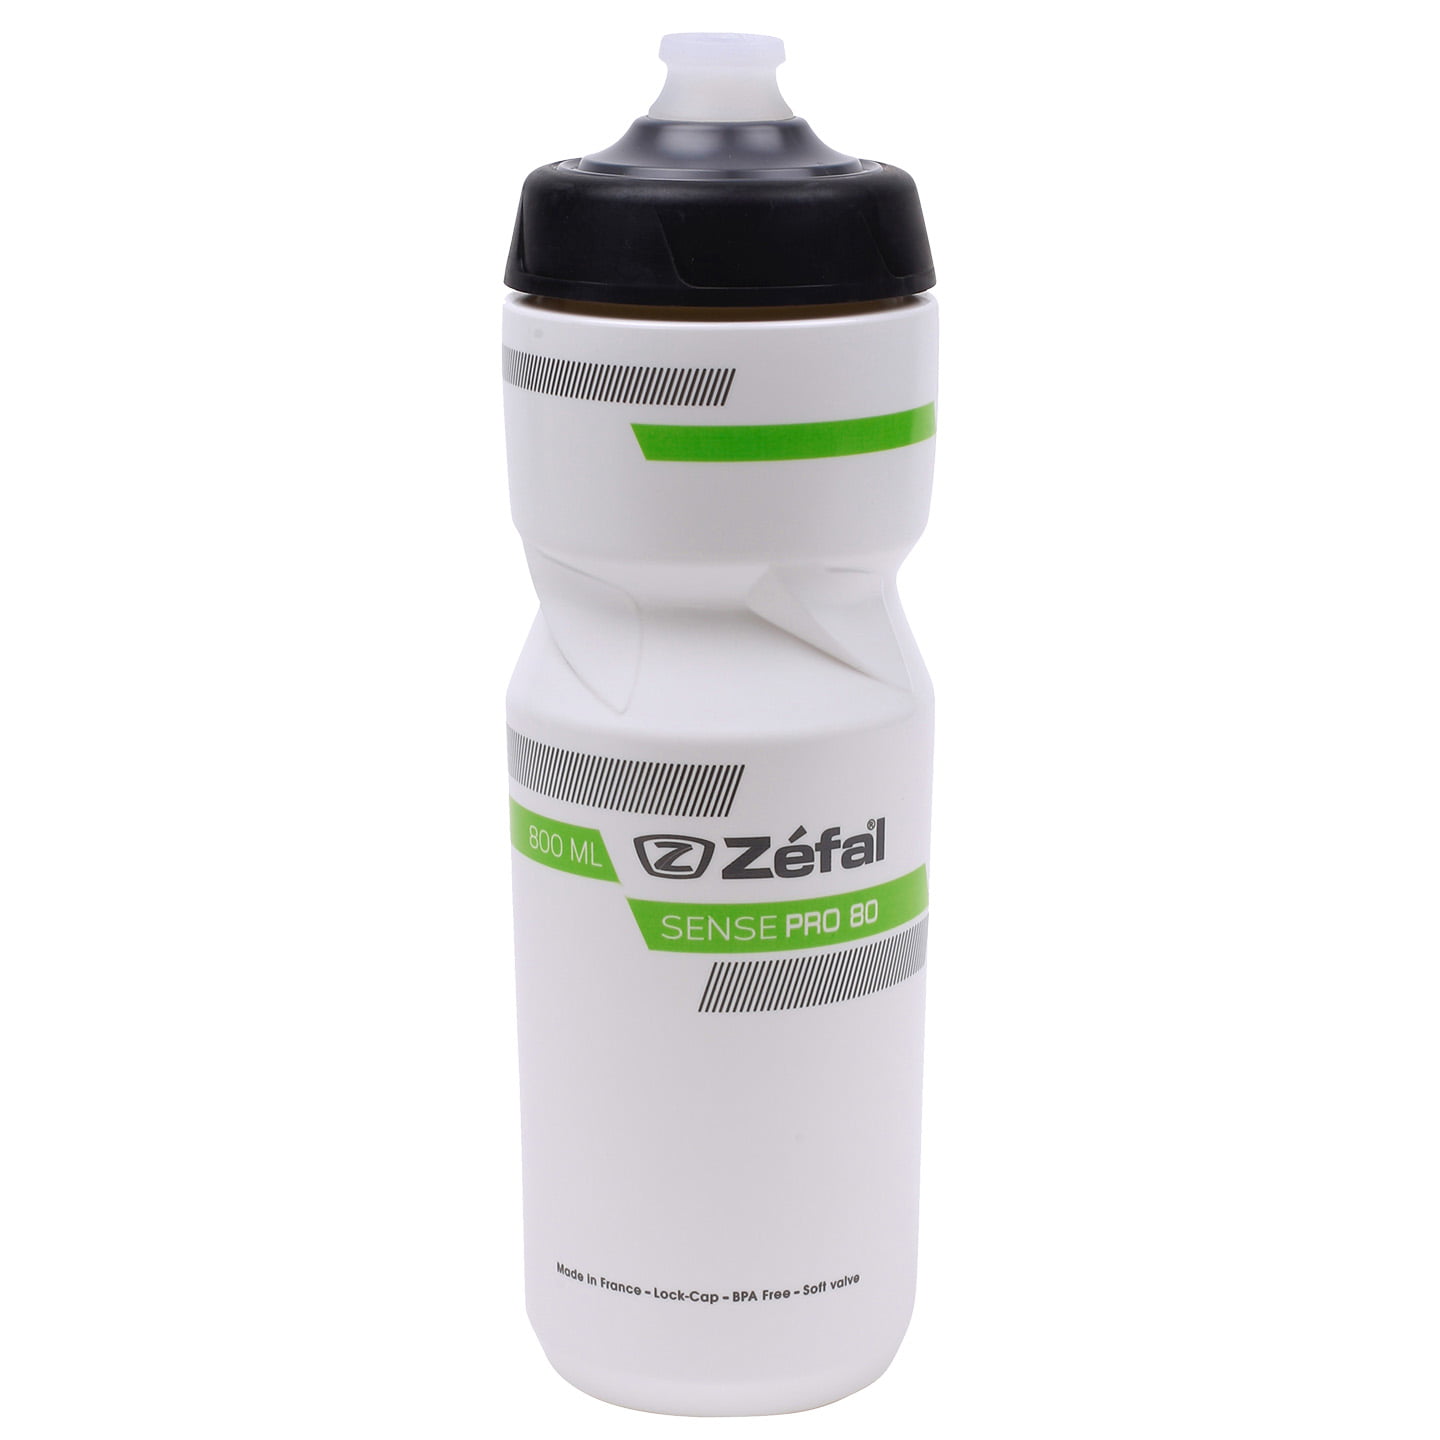 ZEFAL Sense Pro 800 ml Bottle Water Bottle, Bike bottle, Bike accessories